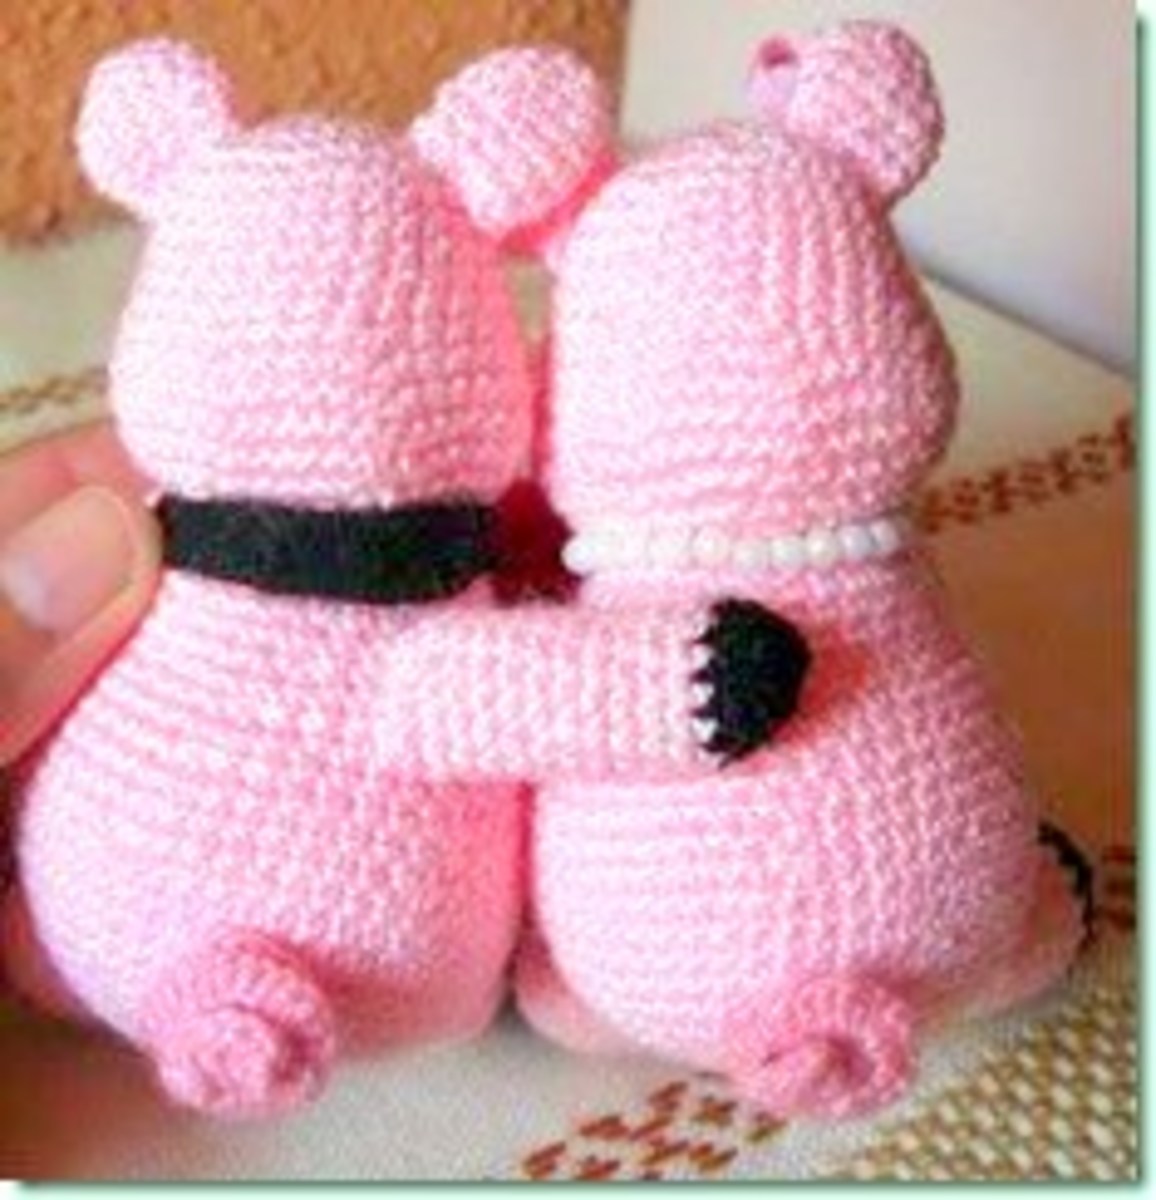 wedding-crochet-little-pigs-in-love-free-crochet-pattern